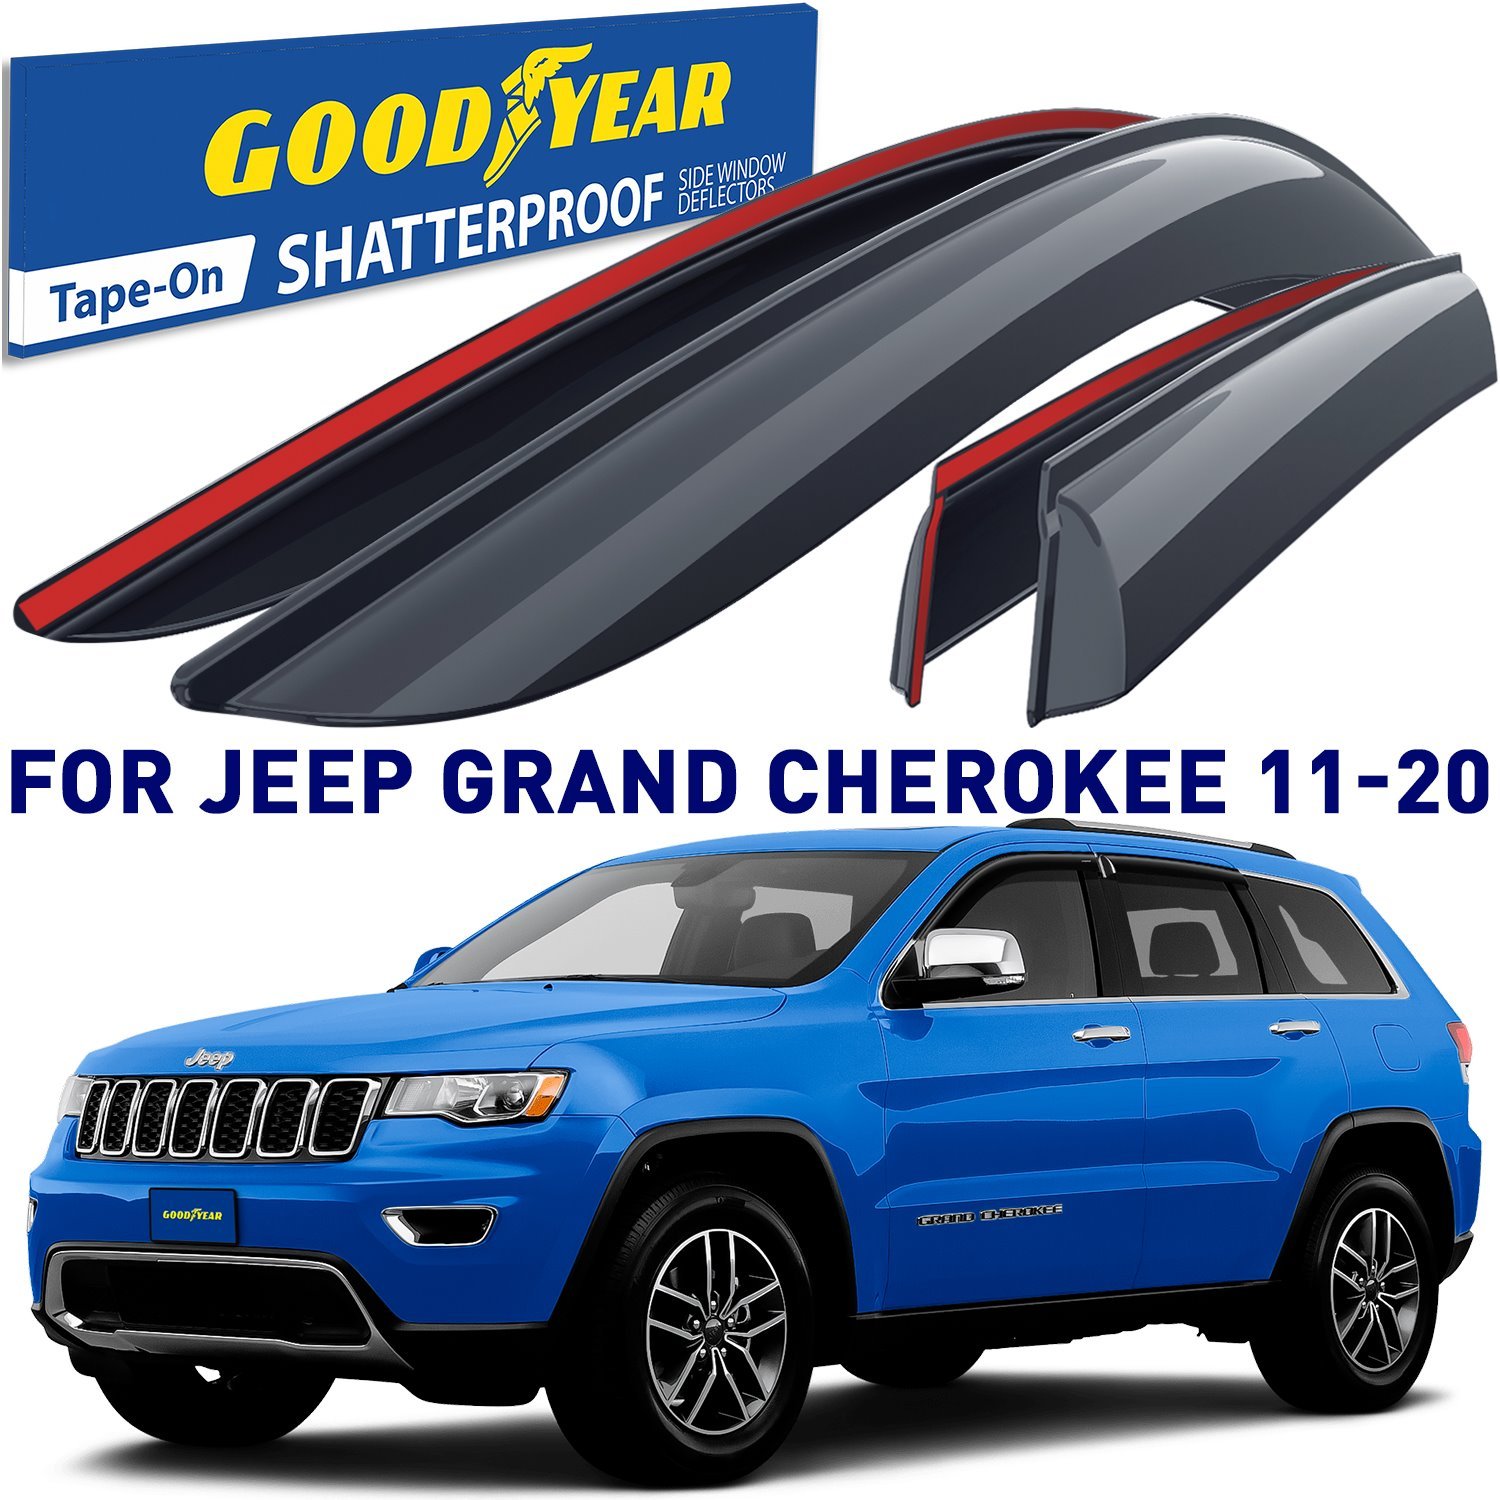 Goodyear Shatterproof Side Window Deflectors for 2011-2020 Jeep Grand Cherokee